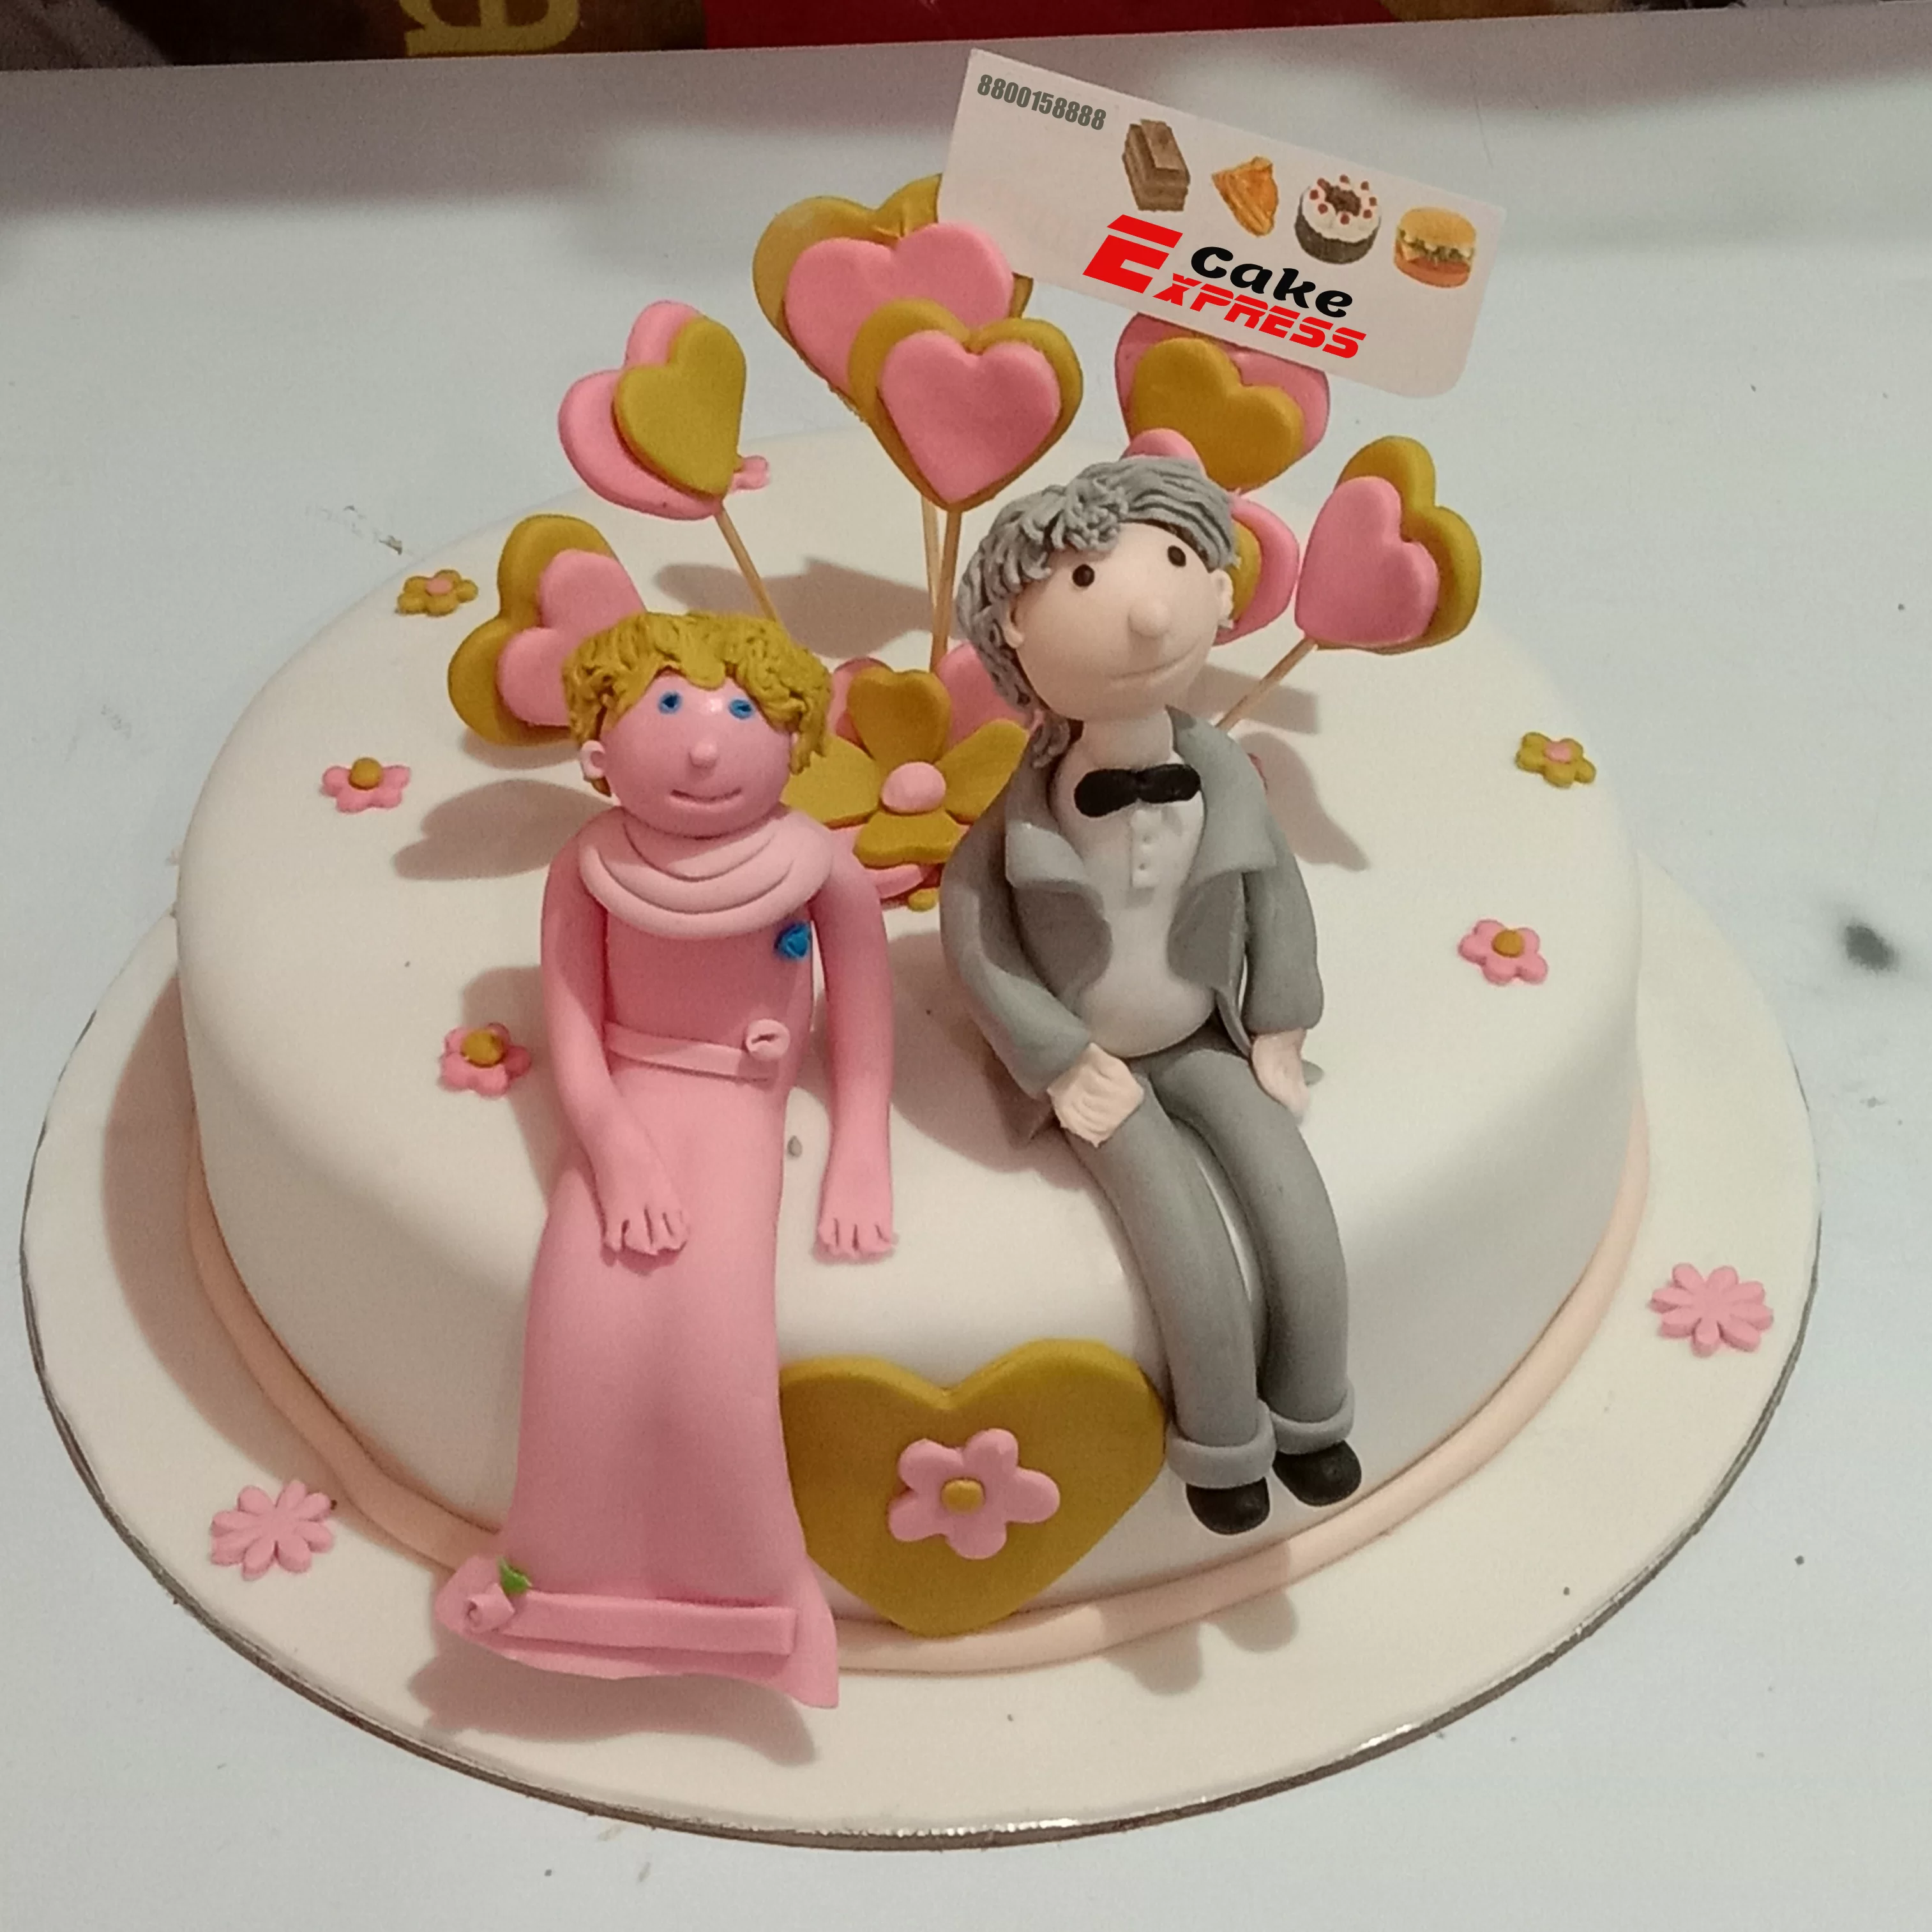 Couple Cake Decorating Ideas | Wedding Anniversary Cake Design | Anniversary  Cake Design - YouTube